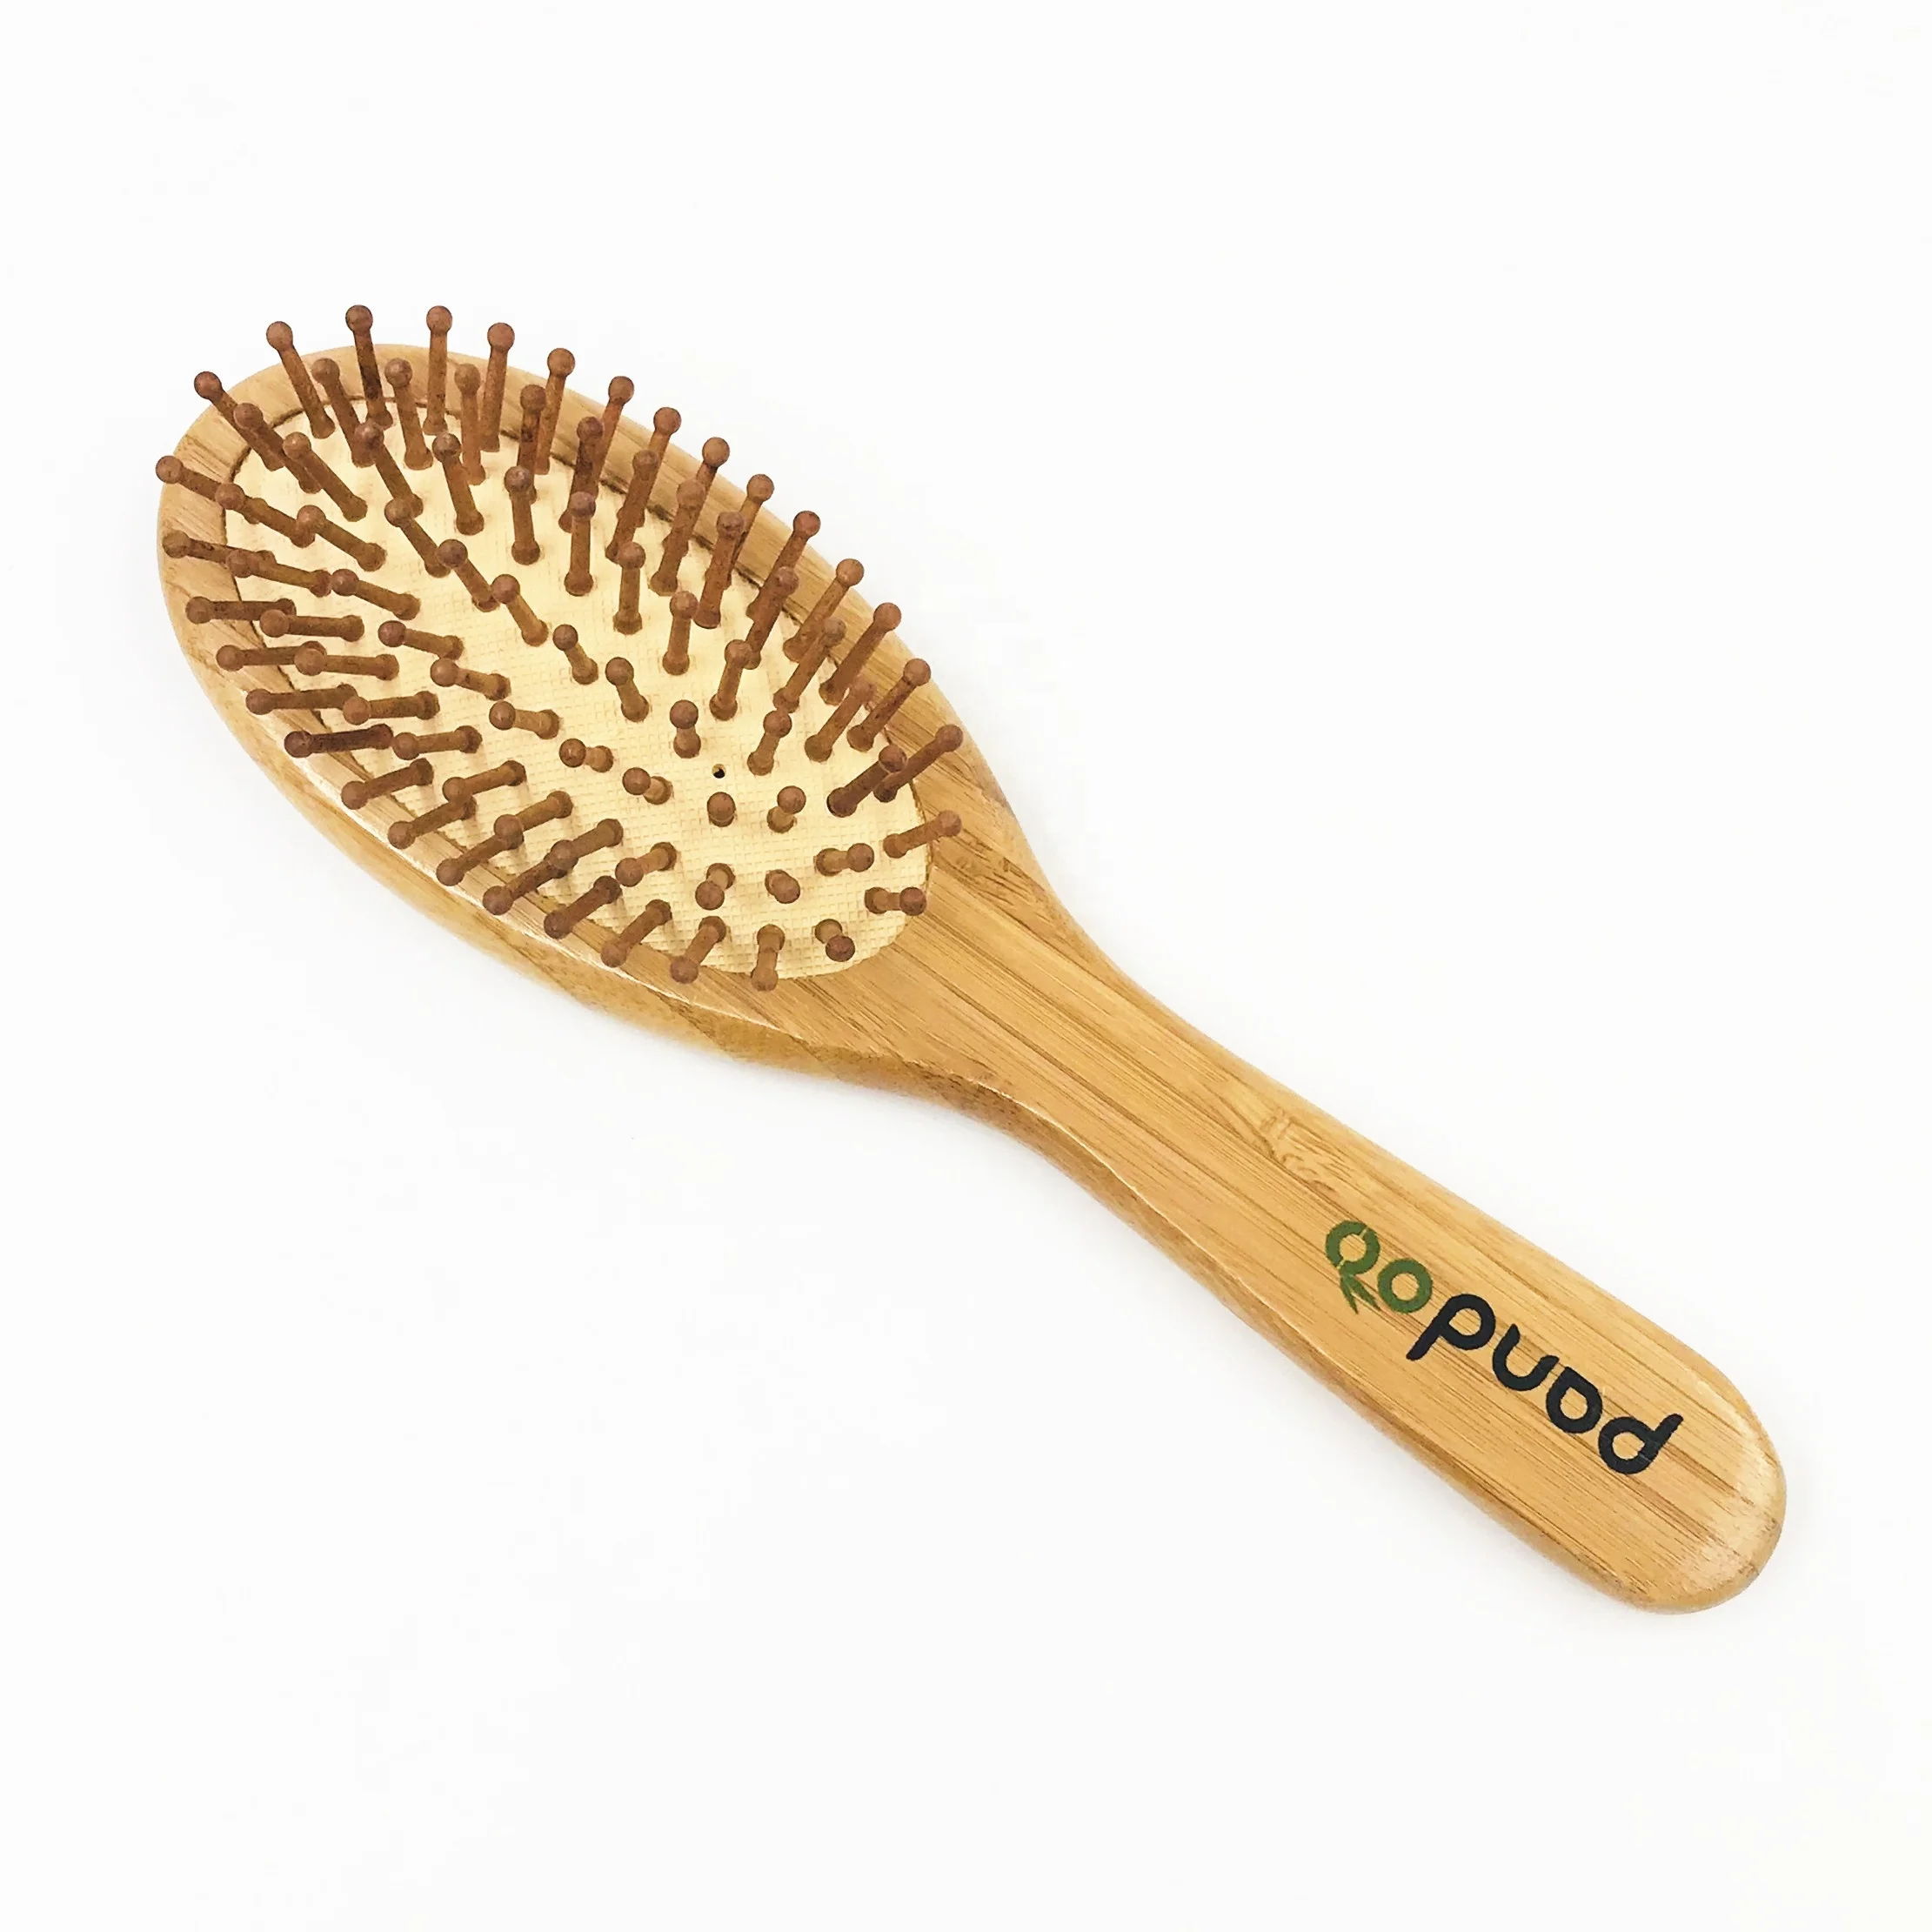 使い捨てホテルアメニティキット、竹の櫛と歯ブラシ、木製のヘアブラシとかみそり - Buy Hotel Amenities,Wooden  Razor,Bamboo Toothbrush Product on Alibaba.com